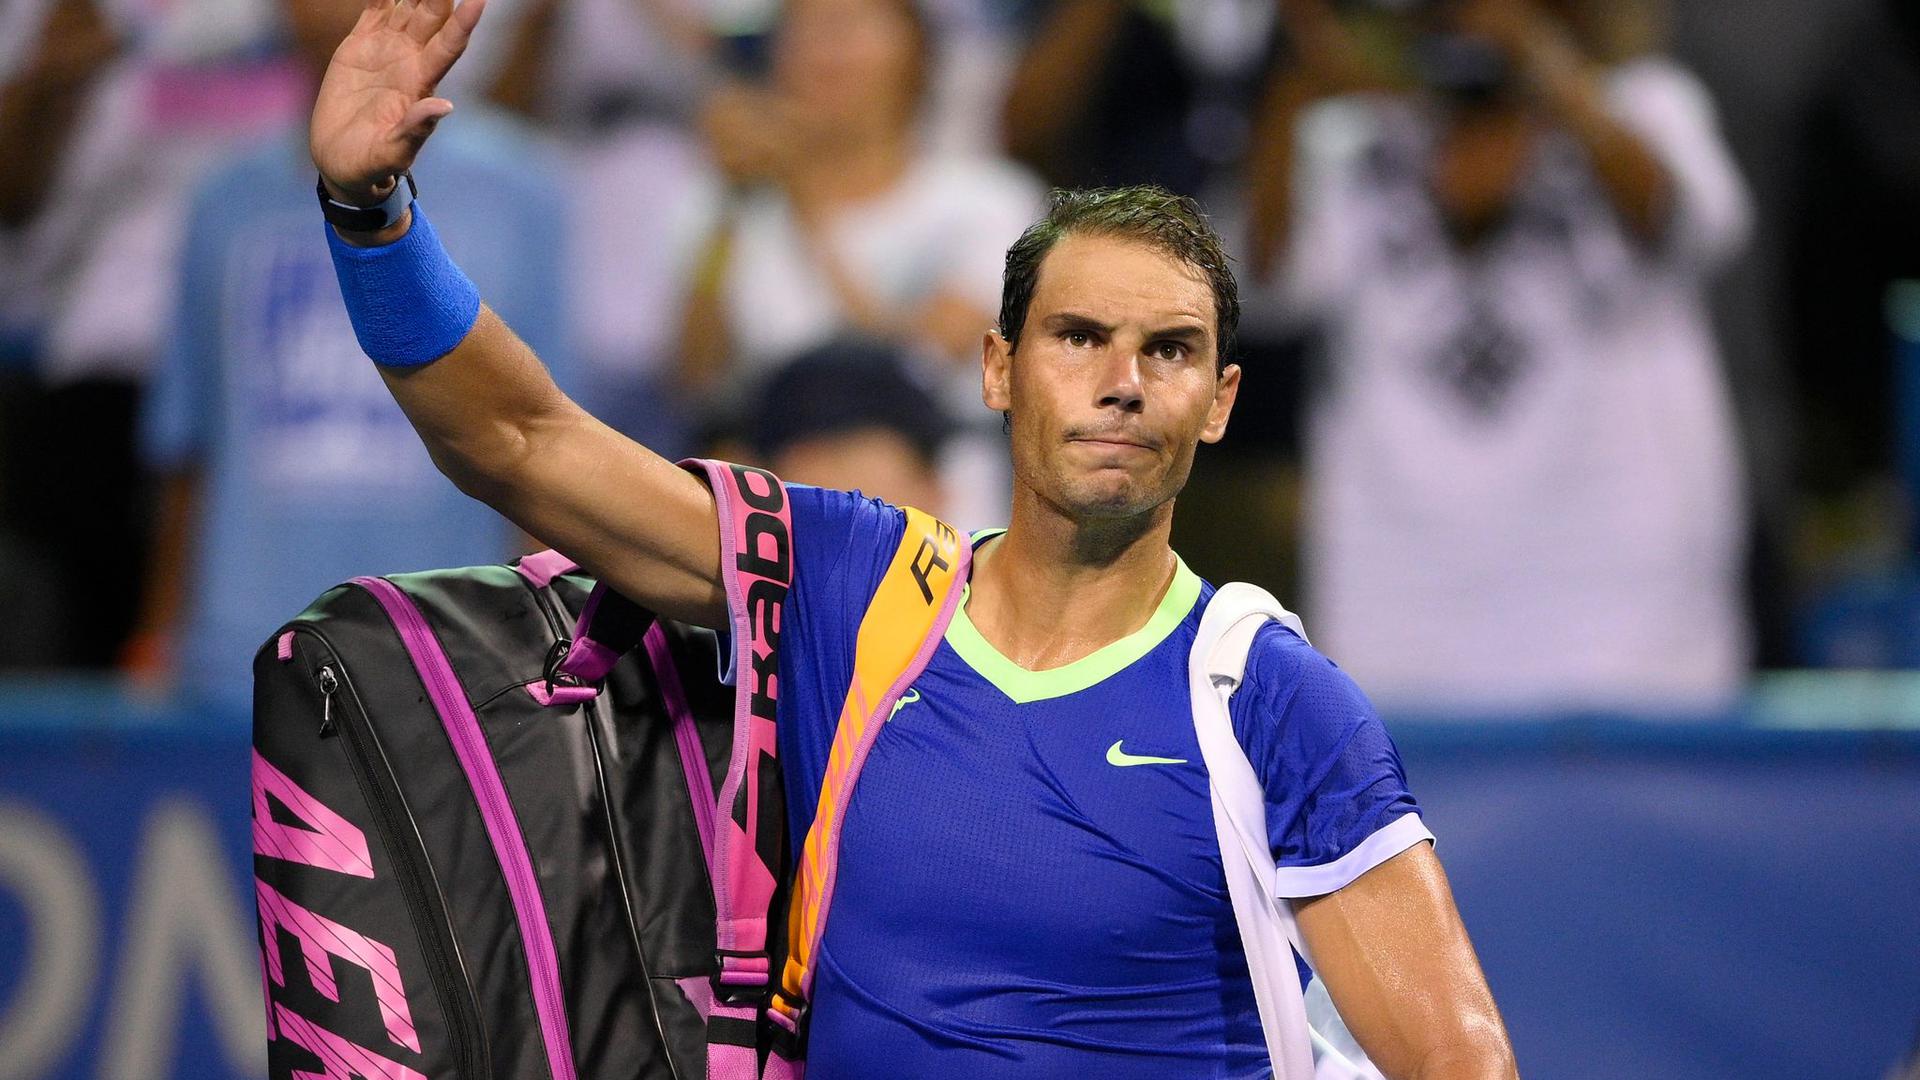 Auch Rafael Nadal wird seine Tennis-Saison beenden.